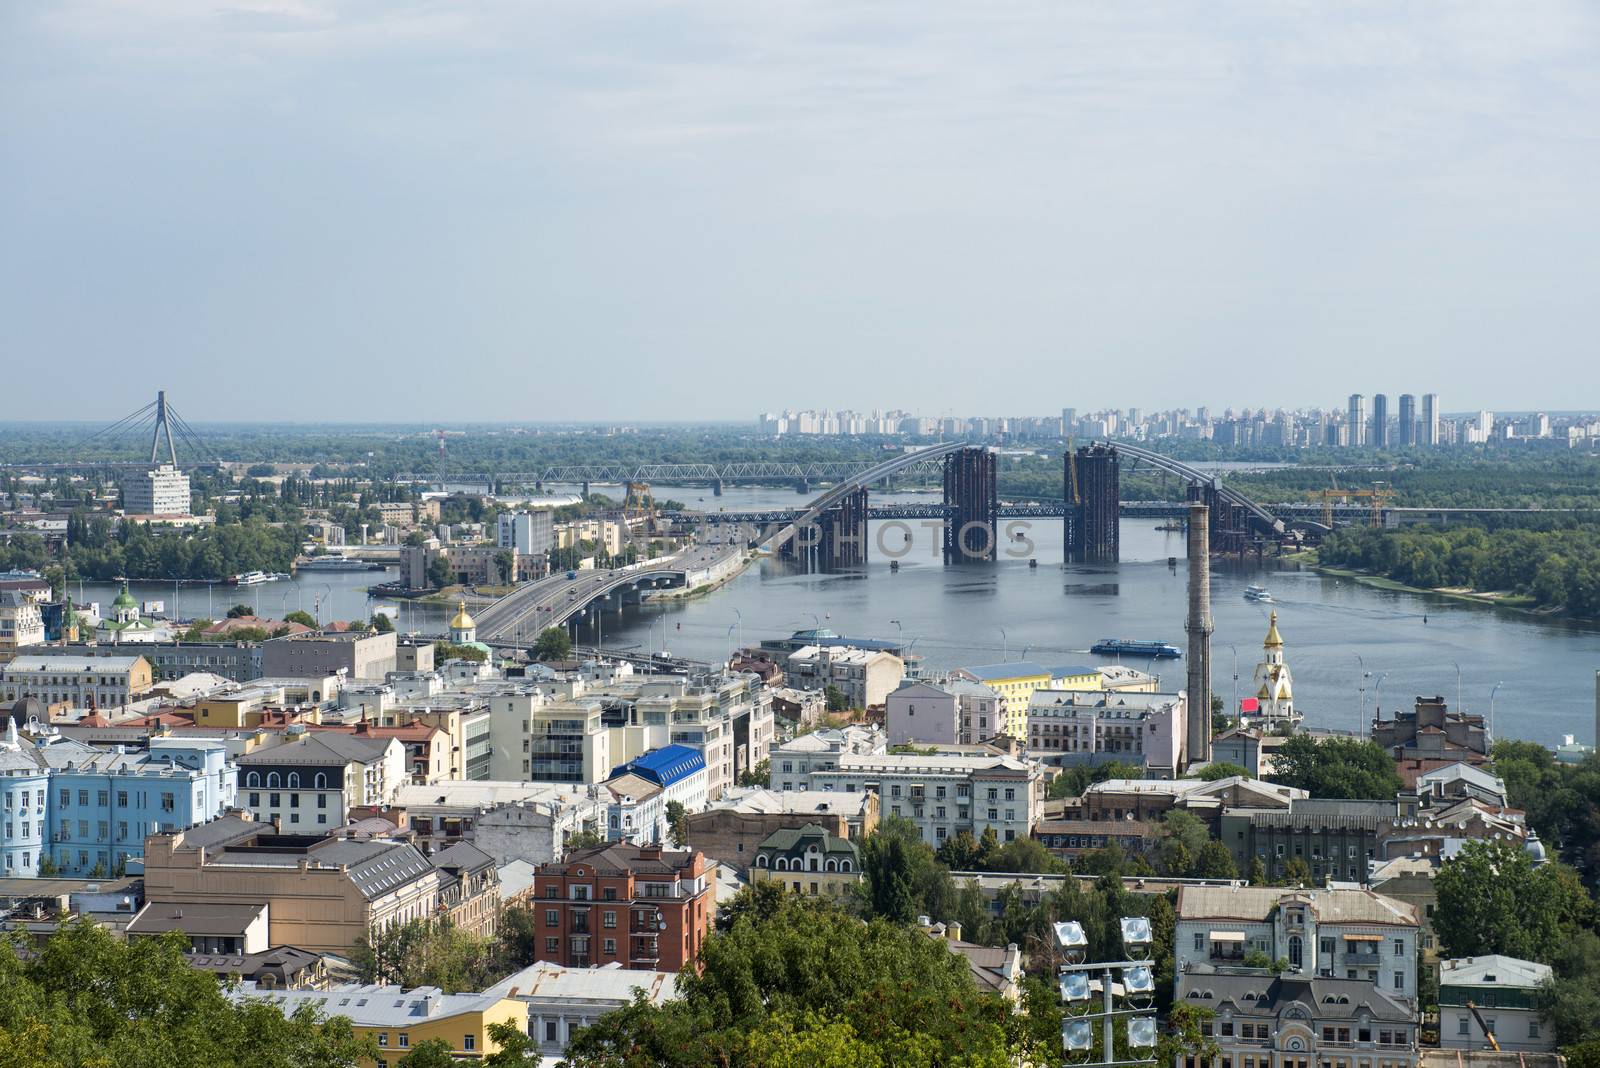 Dnepr river in Kiev by Alenmax